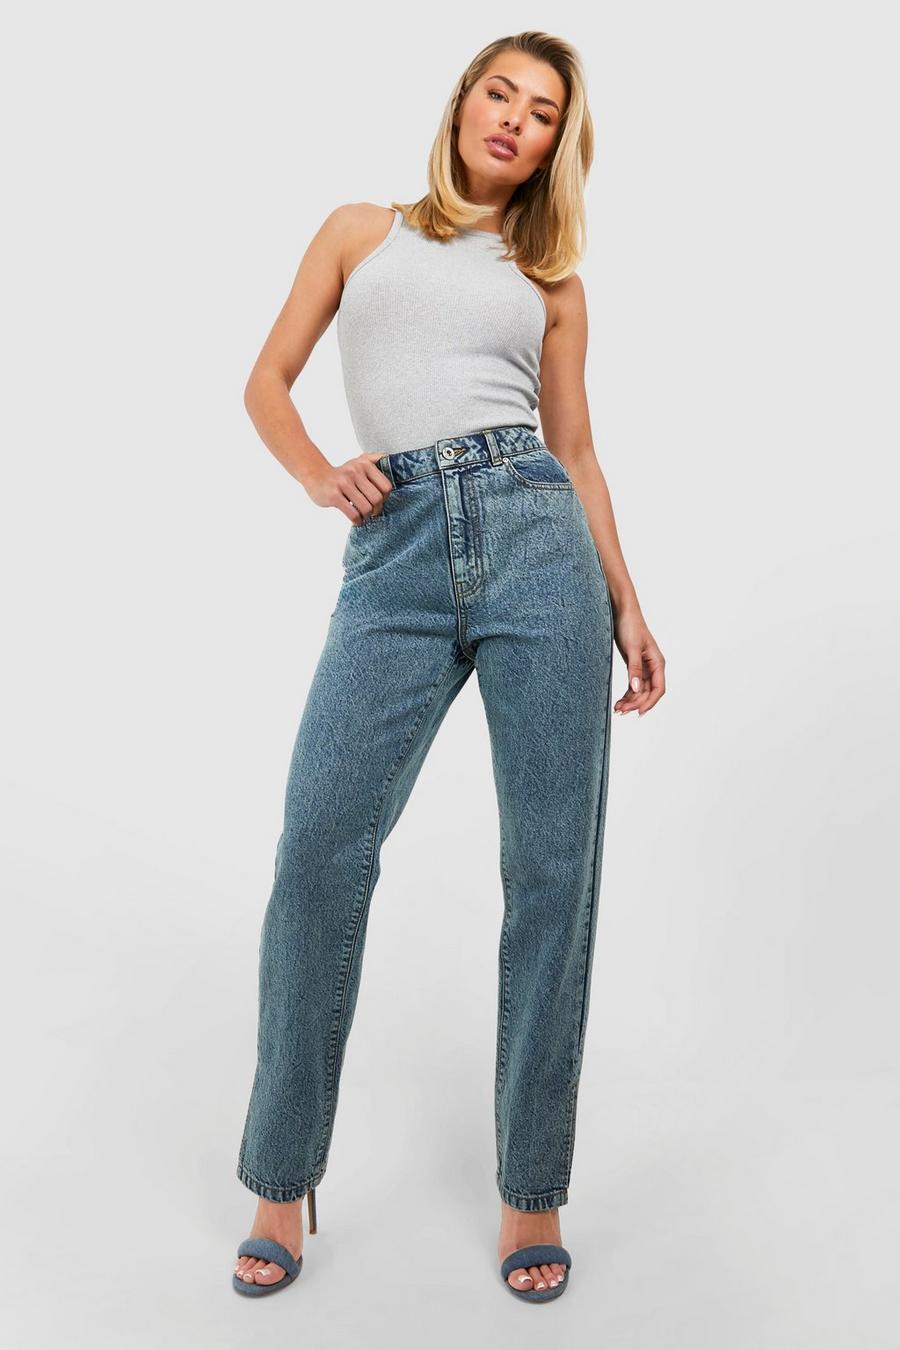 Basics Jeans mit geradem Bein und geteiltem Saum, Vintage wash